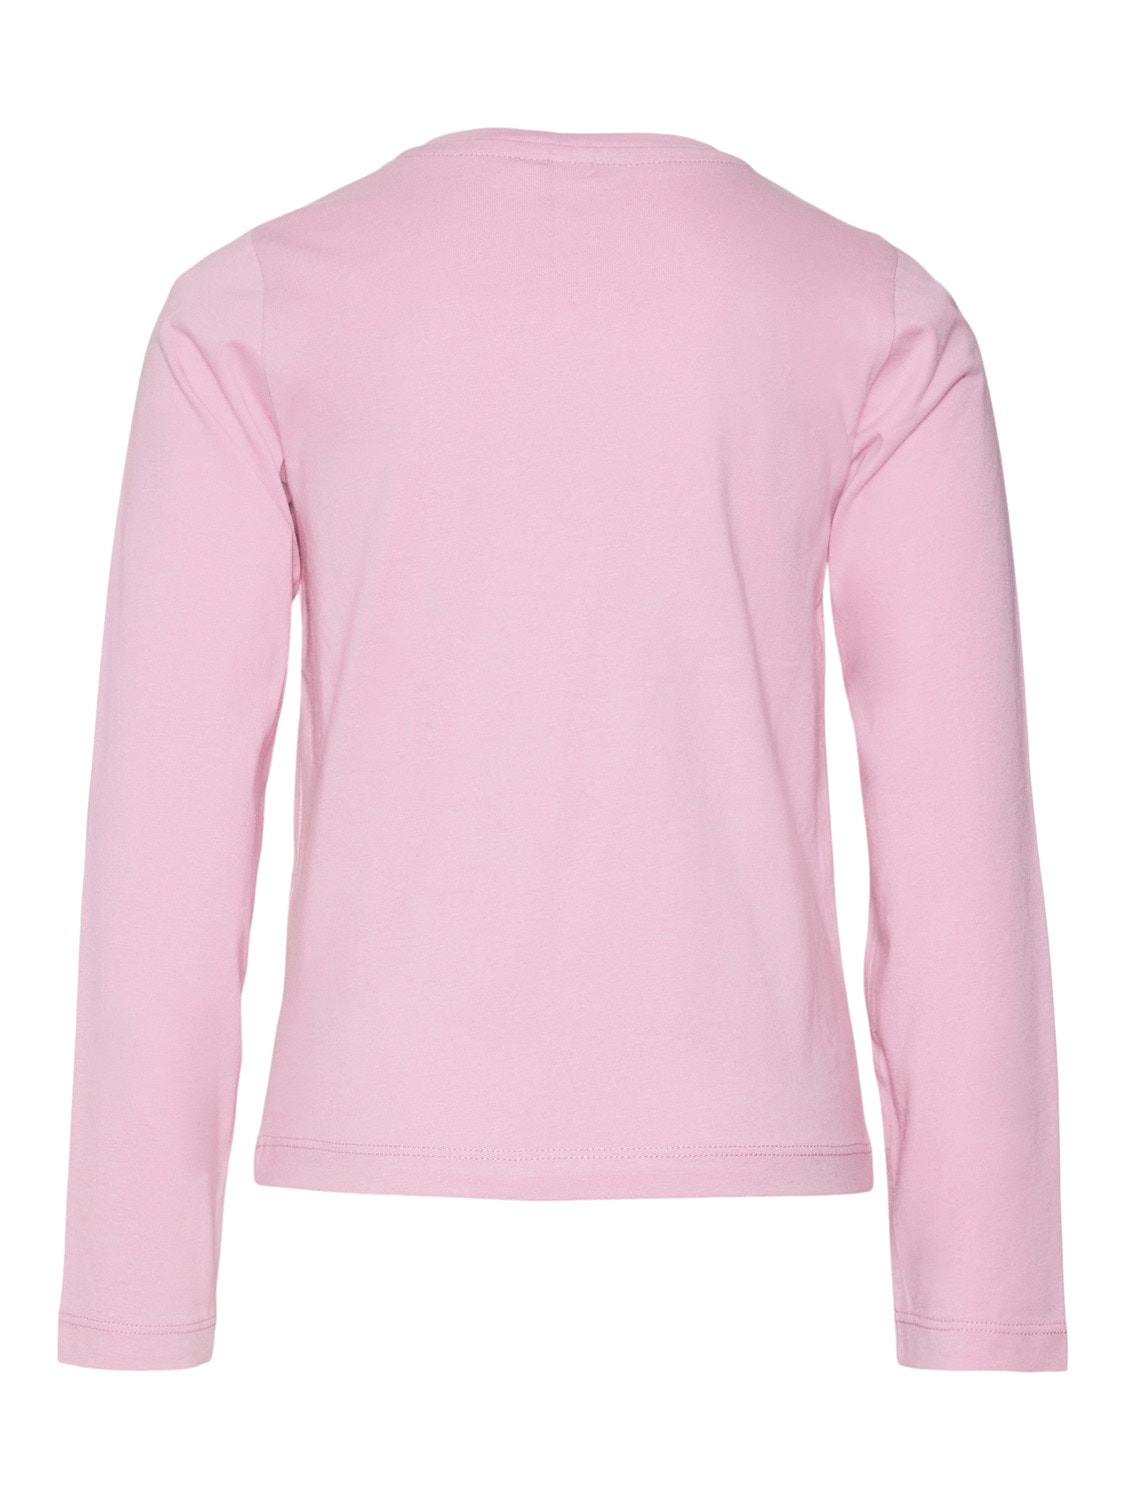 Vero Moda VMATHLETICFRANCIS T-shirts -Pastel Lavender - 10301281